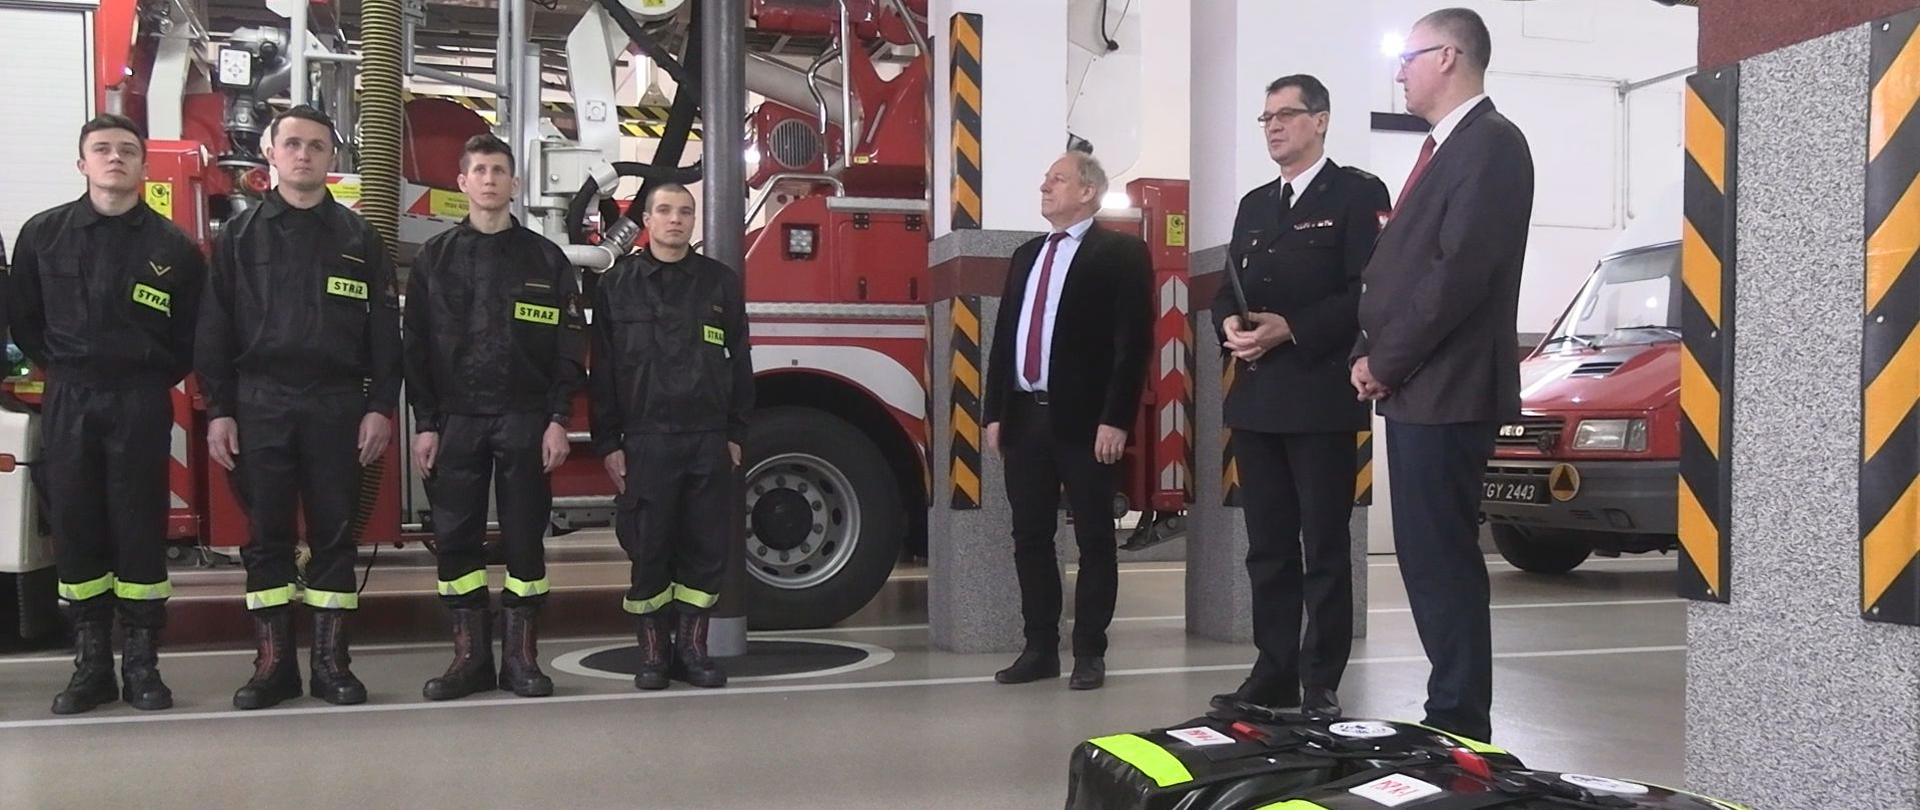 strażacy na garażu w remizie ustawieni w szeregu w postawie zasadniczej, obok nich stoi strażak w mundurze wyjściowym wraz z dwoma mężczyznami. Przed nimi ułożone dwie torby koloru czerwono-czarnego z napisem PSP-R1. 